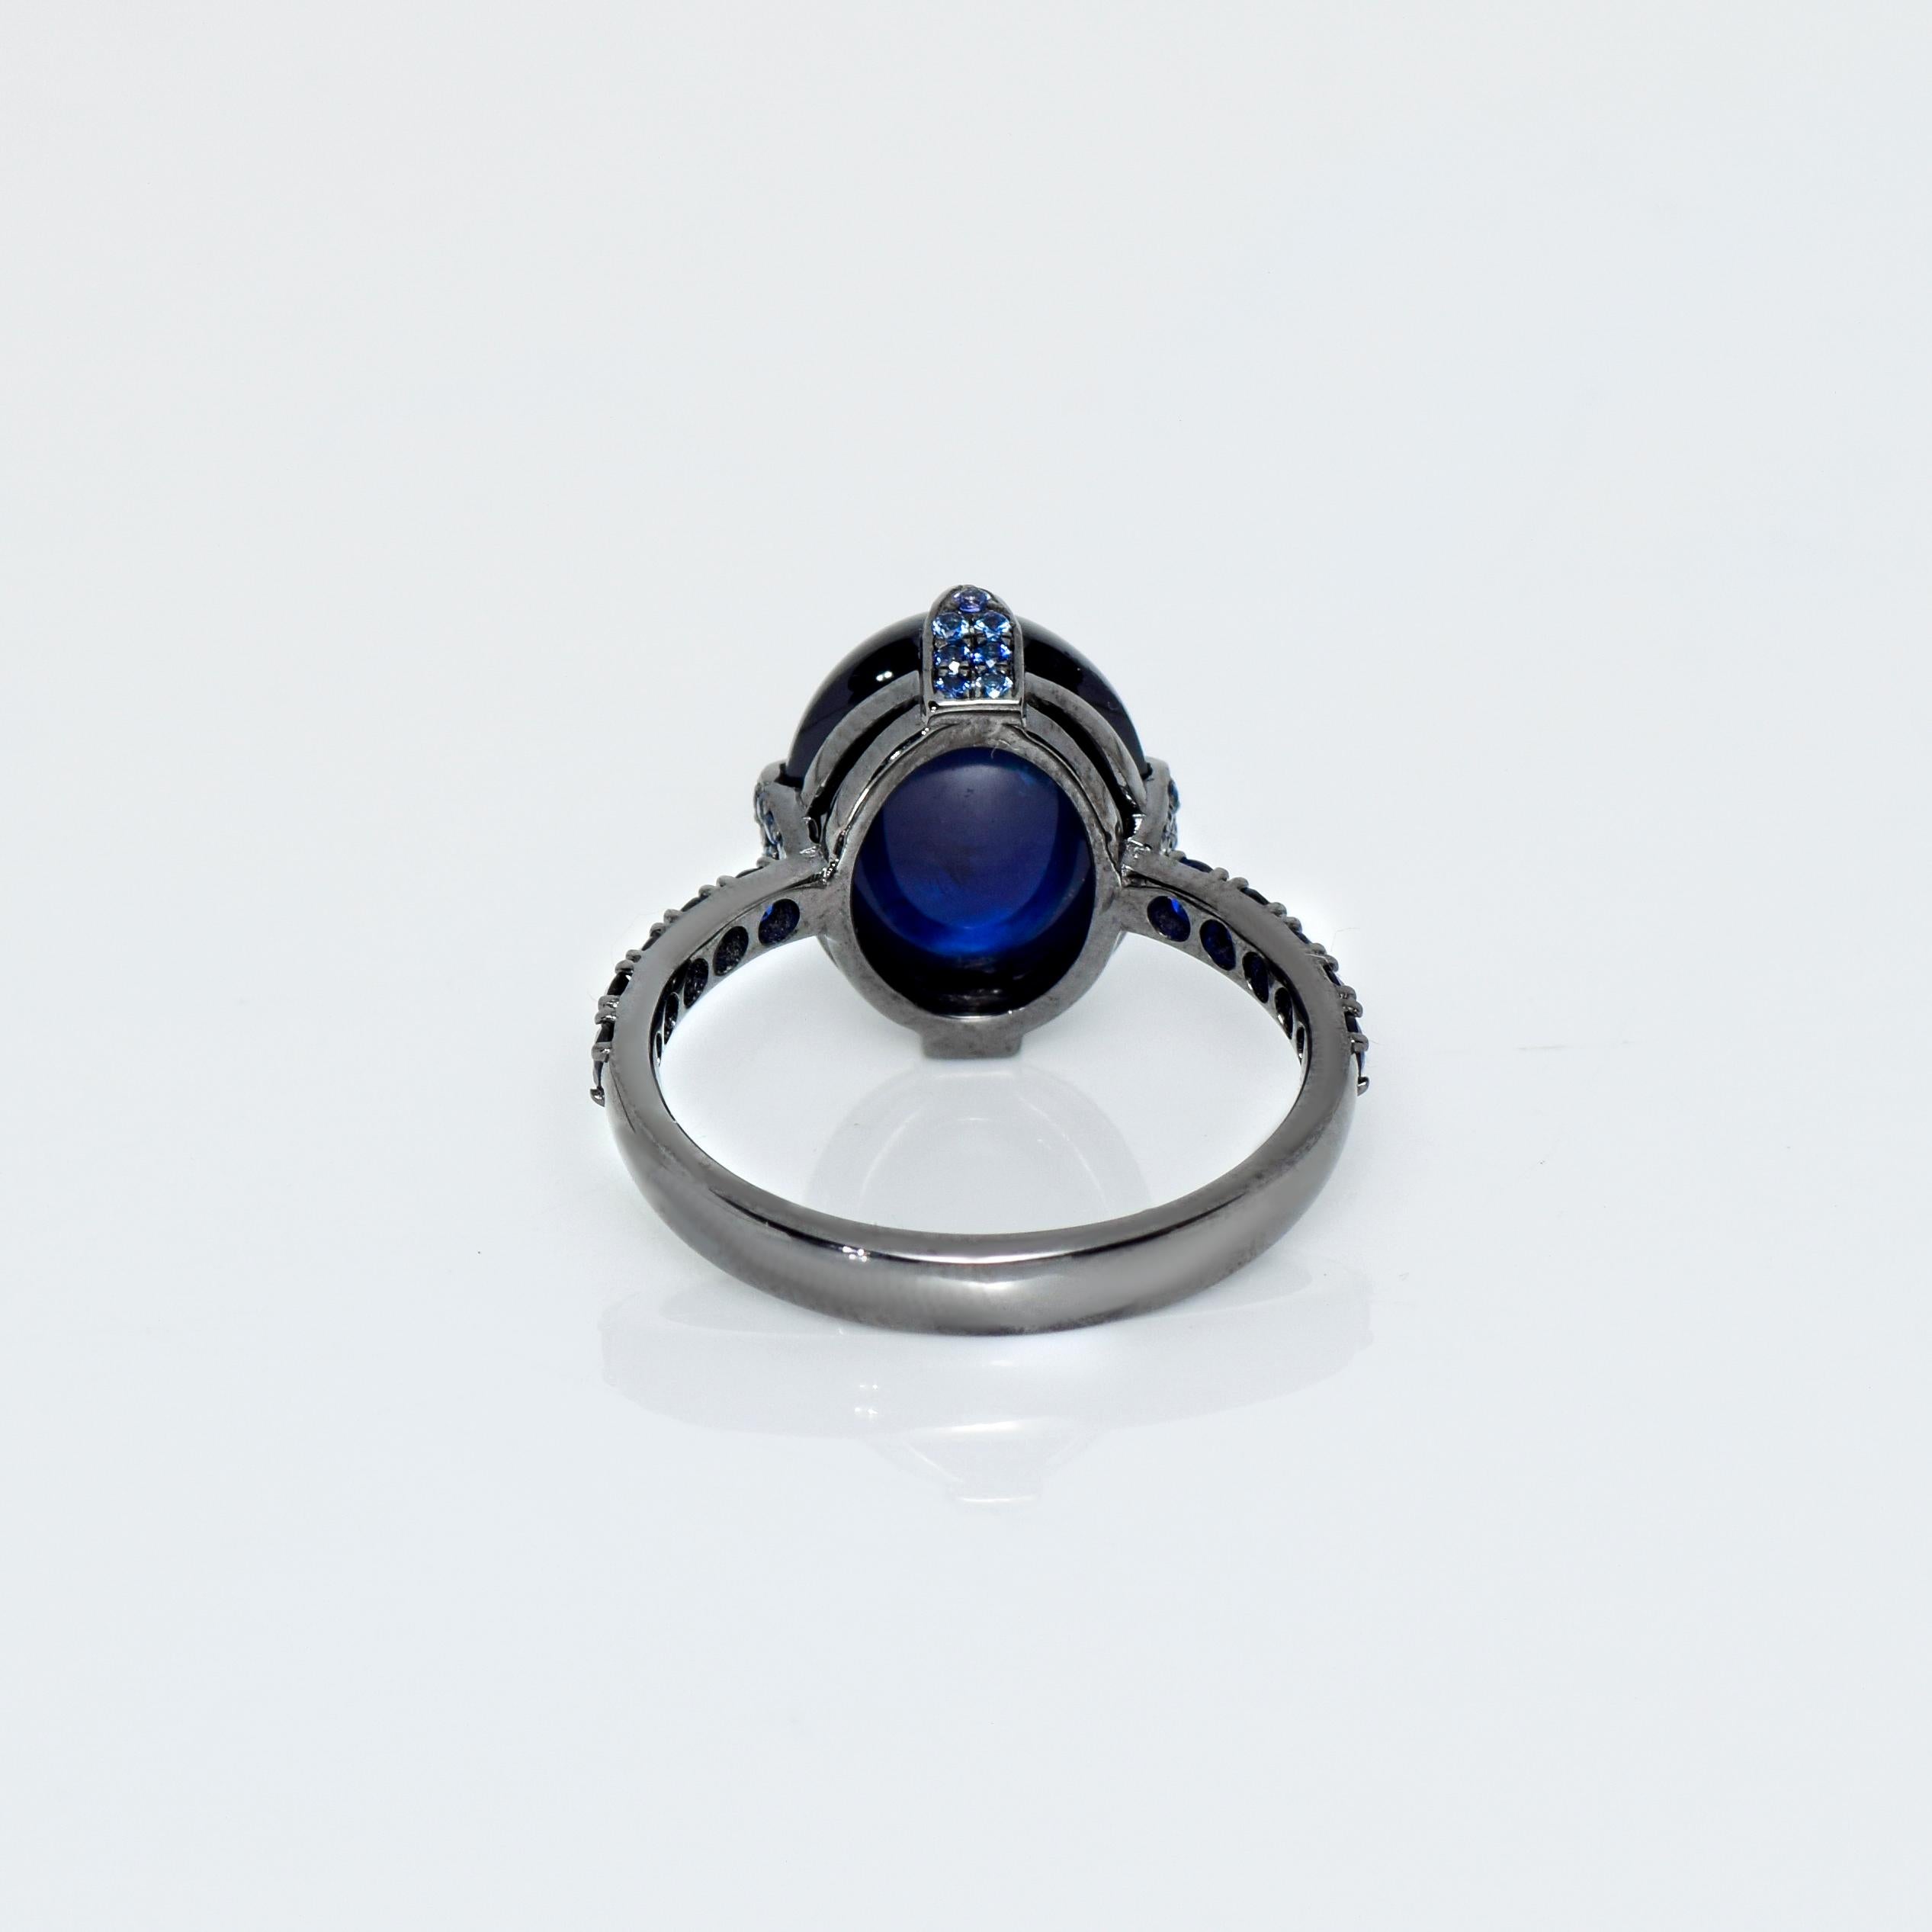 IGI 14k 7.25 Carat Blue Sapphire Antique Art Deco Engagement Ring For Sale 1